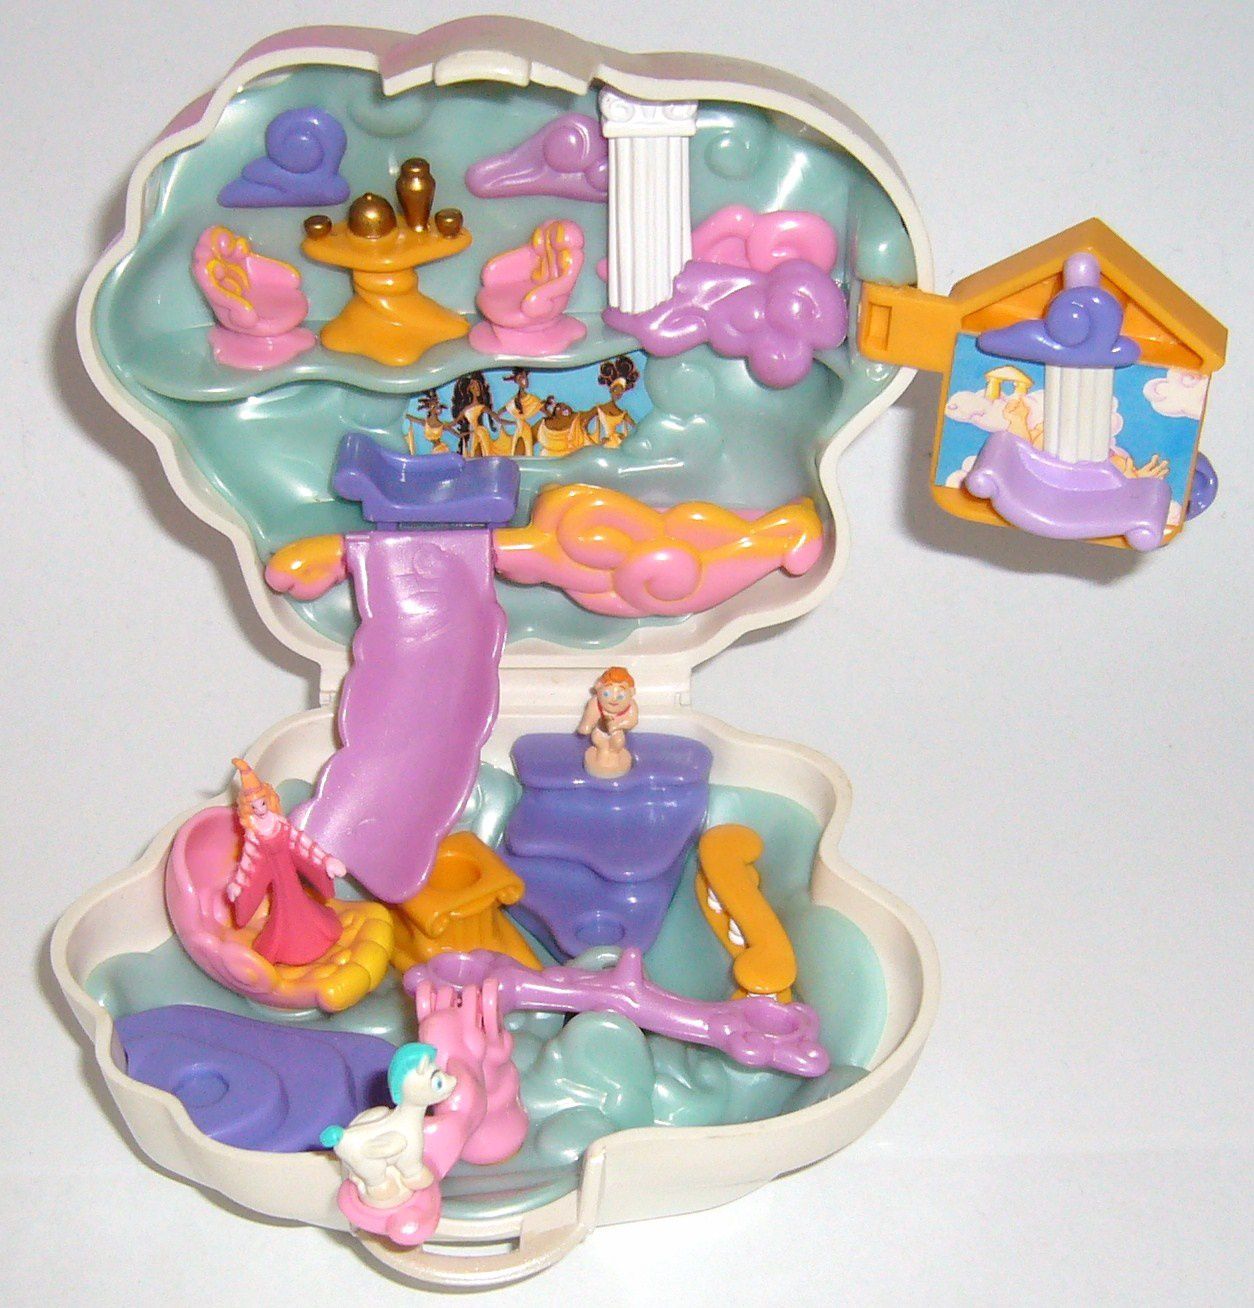 Polly Pocket Disney Hercule/Hercules - Le blog de pollyenfolie,  collectionneuse de Polly Pocket